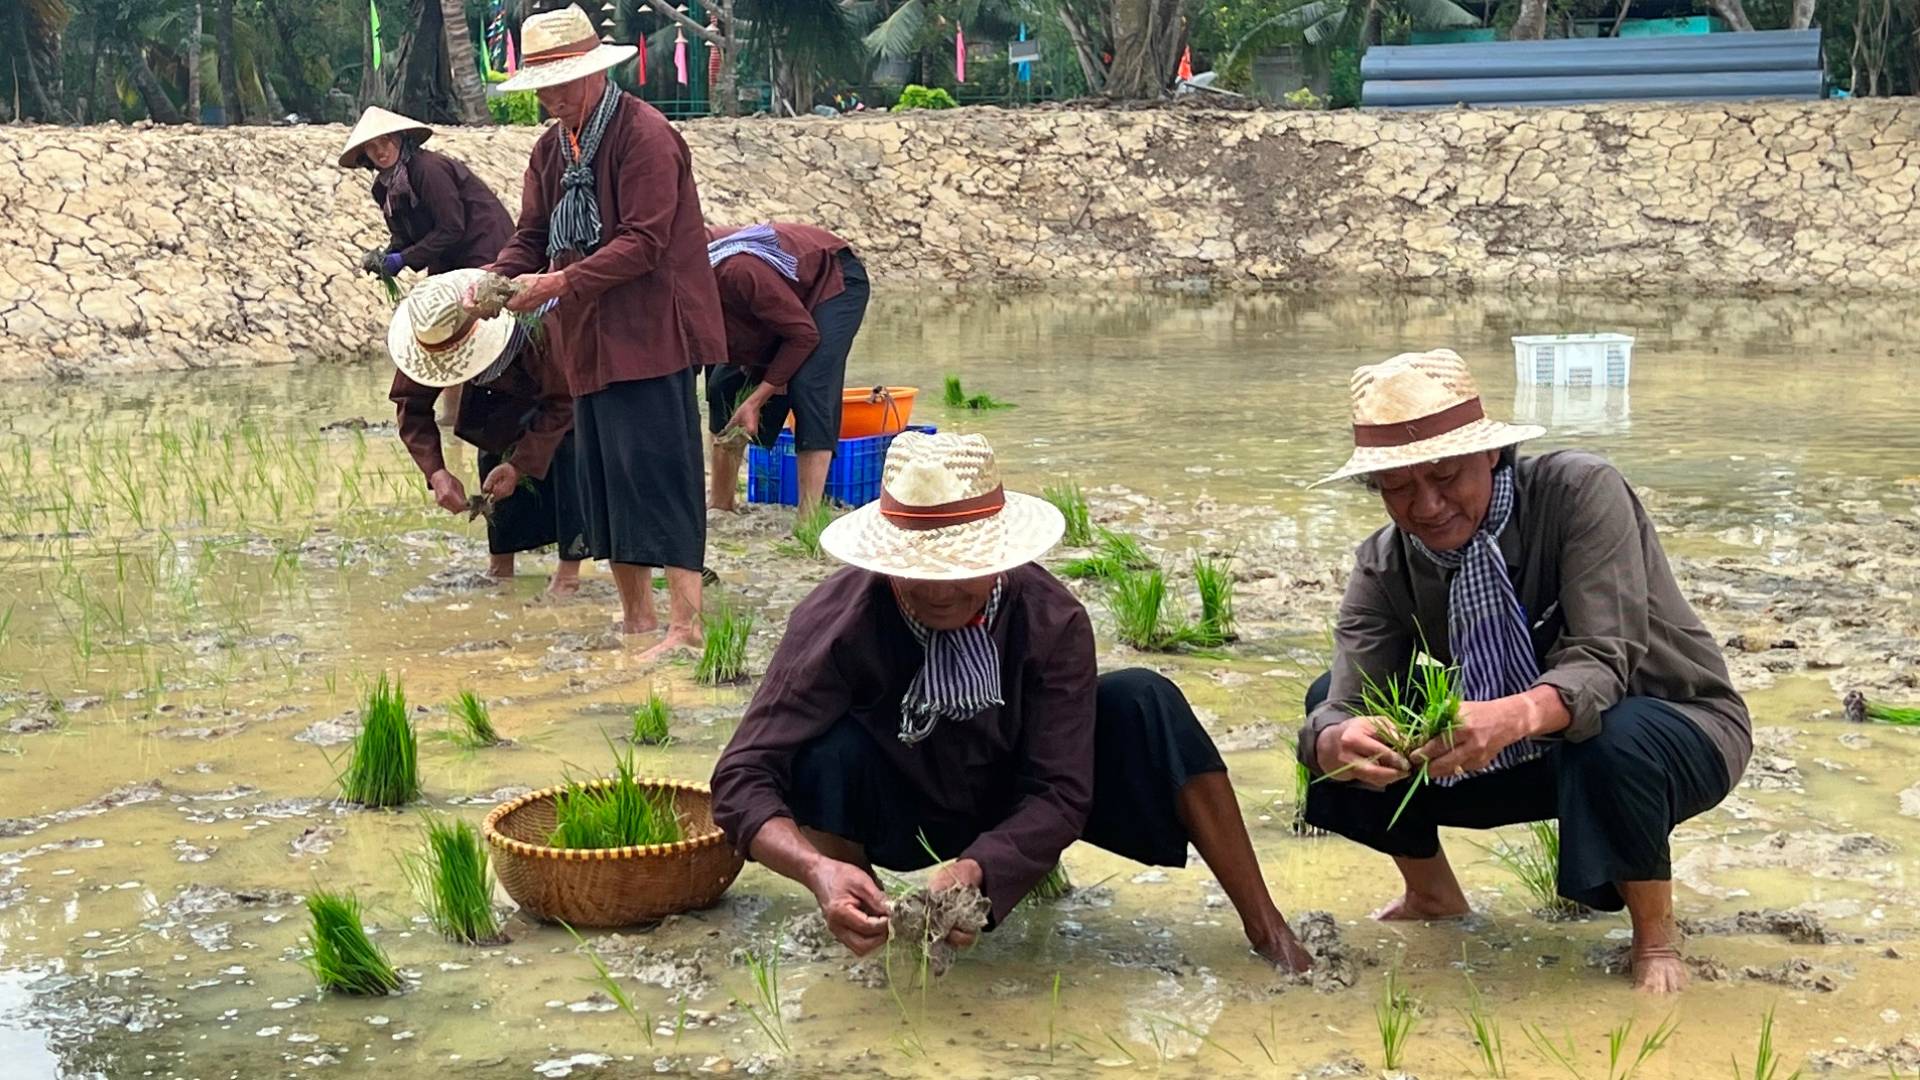 Mô hình cựu chiến binh cho mượn đất trồng lúa ở tỉnh Bến Tre mang lại hiệu quả.